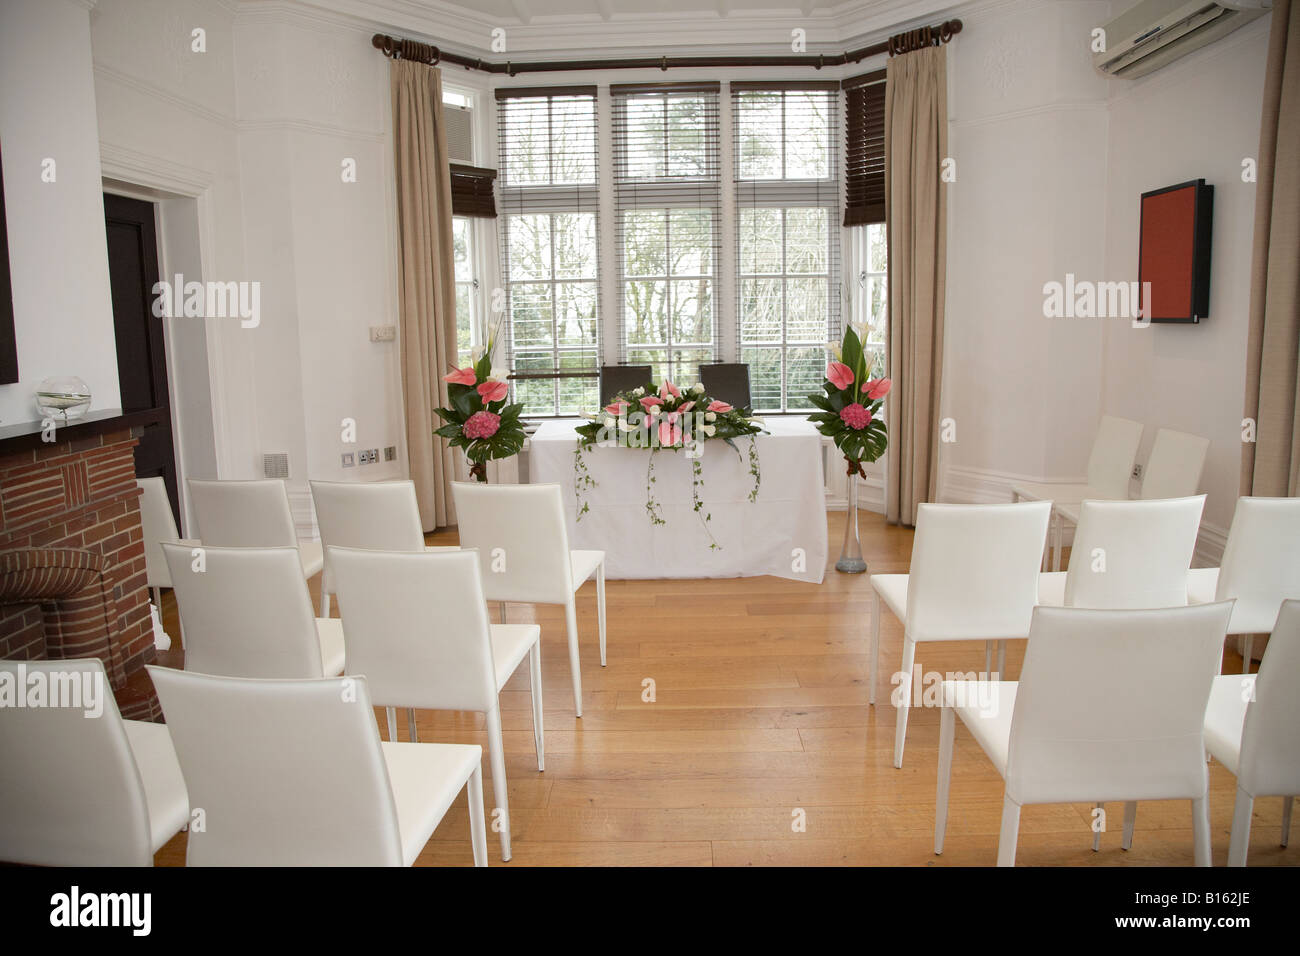 Cerimonia di nozze camera in attesa per la sposa e lo sposo per arrivare Foto Stock